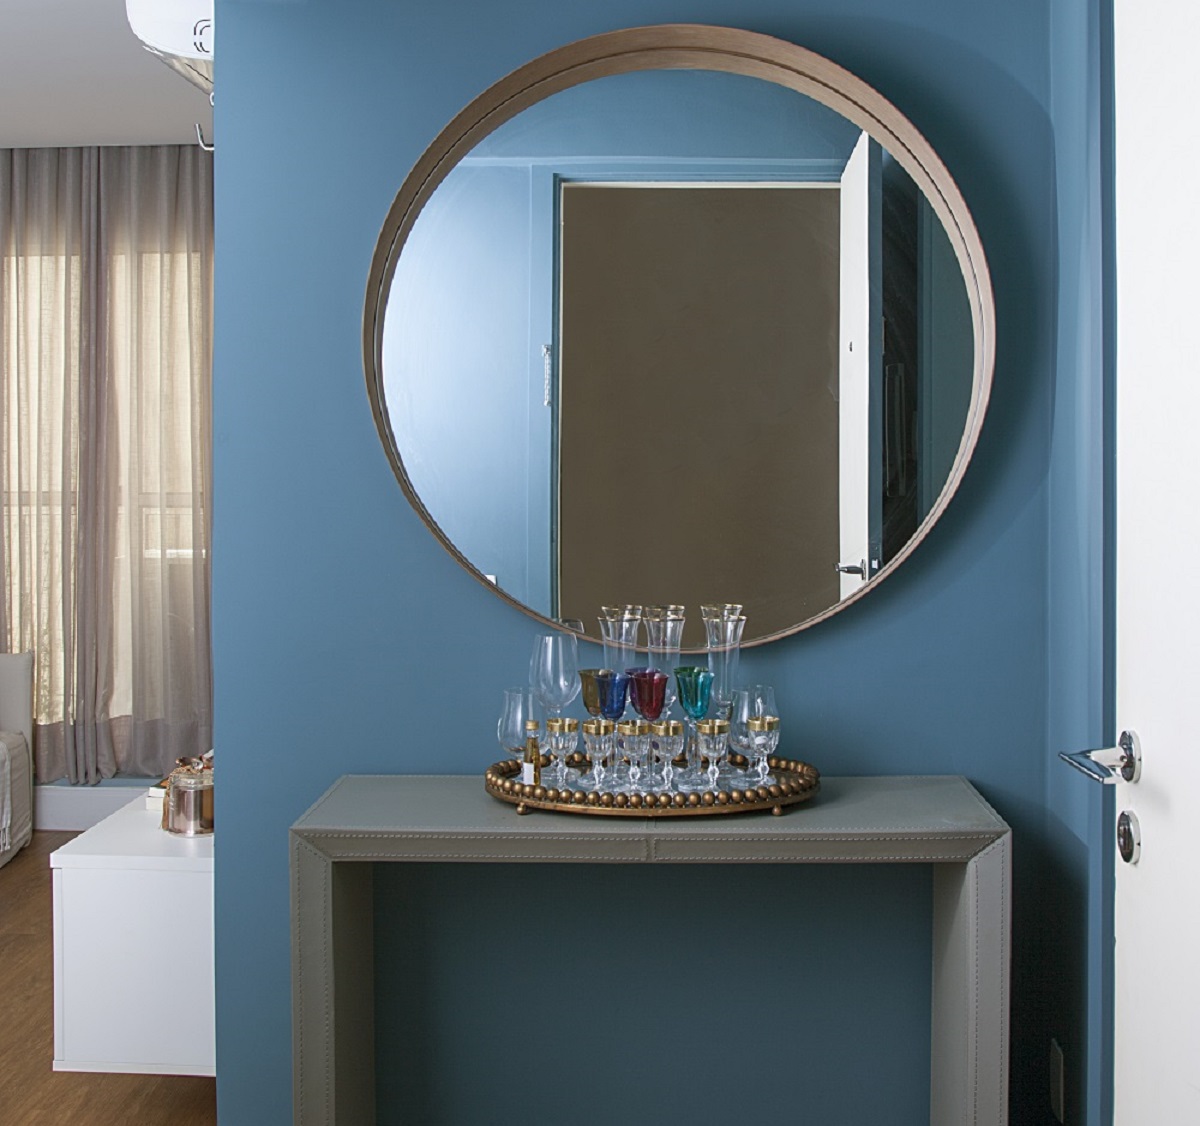 ZDECOR, Araras, SP on Instagram: Um Hall de Entrada para receber e  acolher com muita elegância! O espelho, além de decorar, também tem a  funcionalidade de apa…